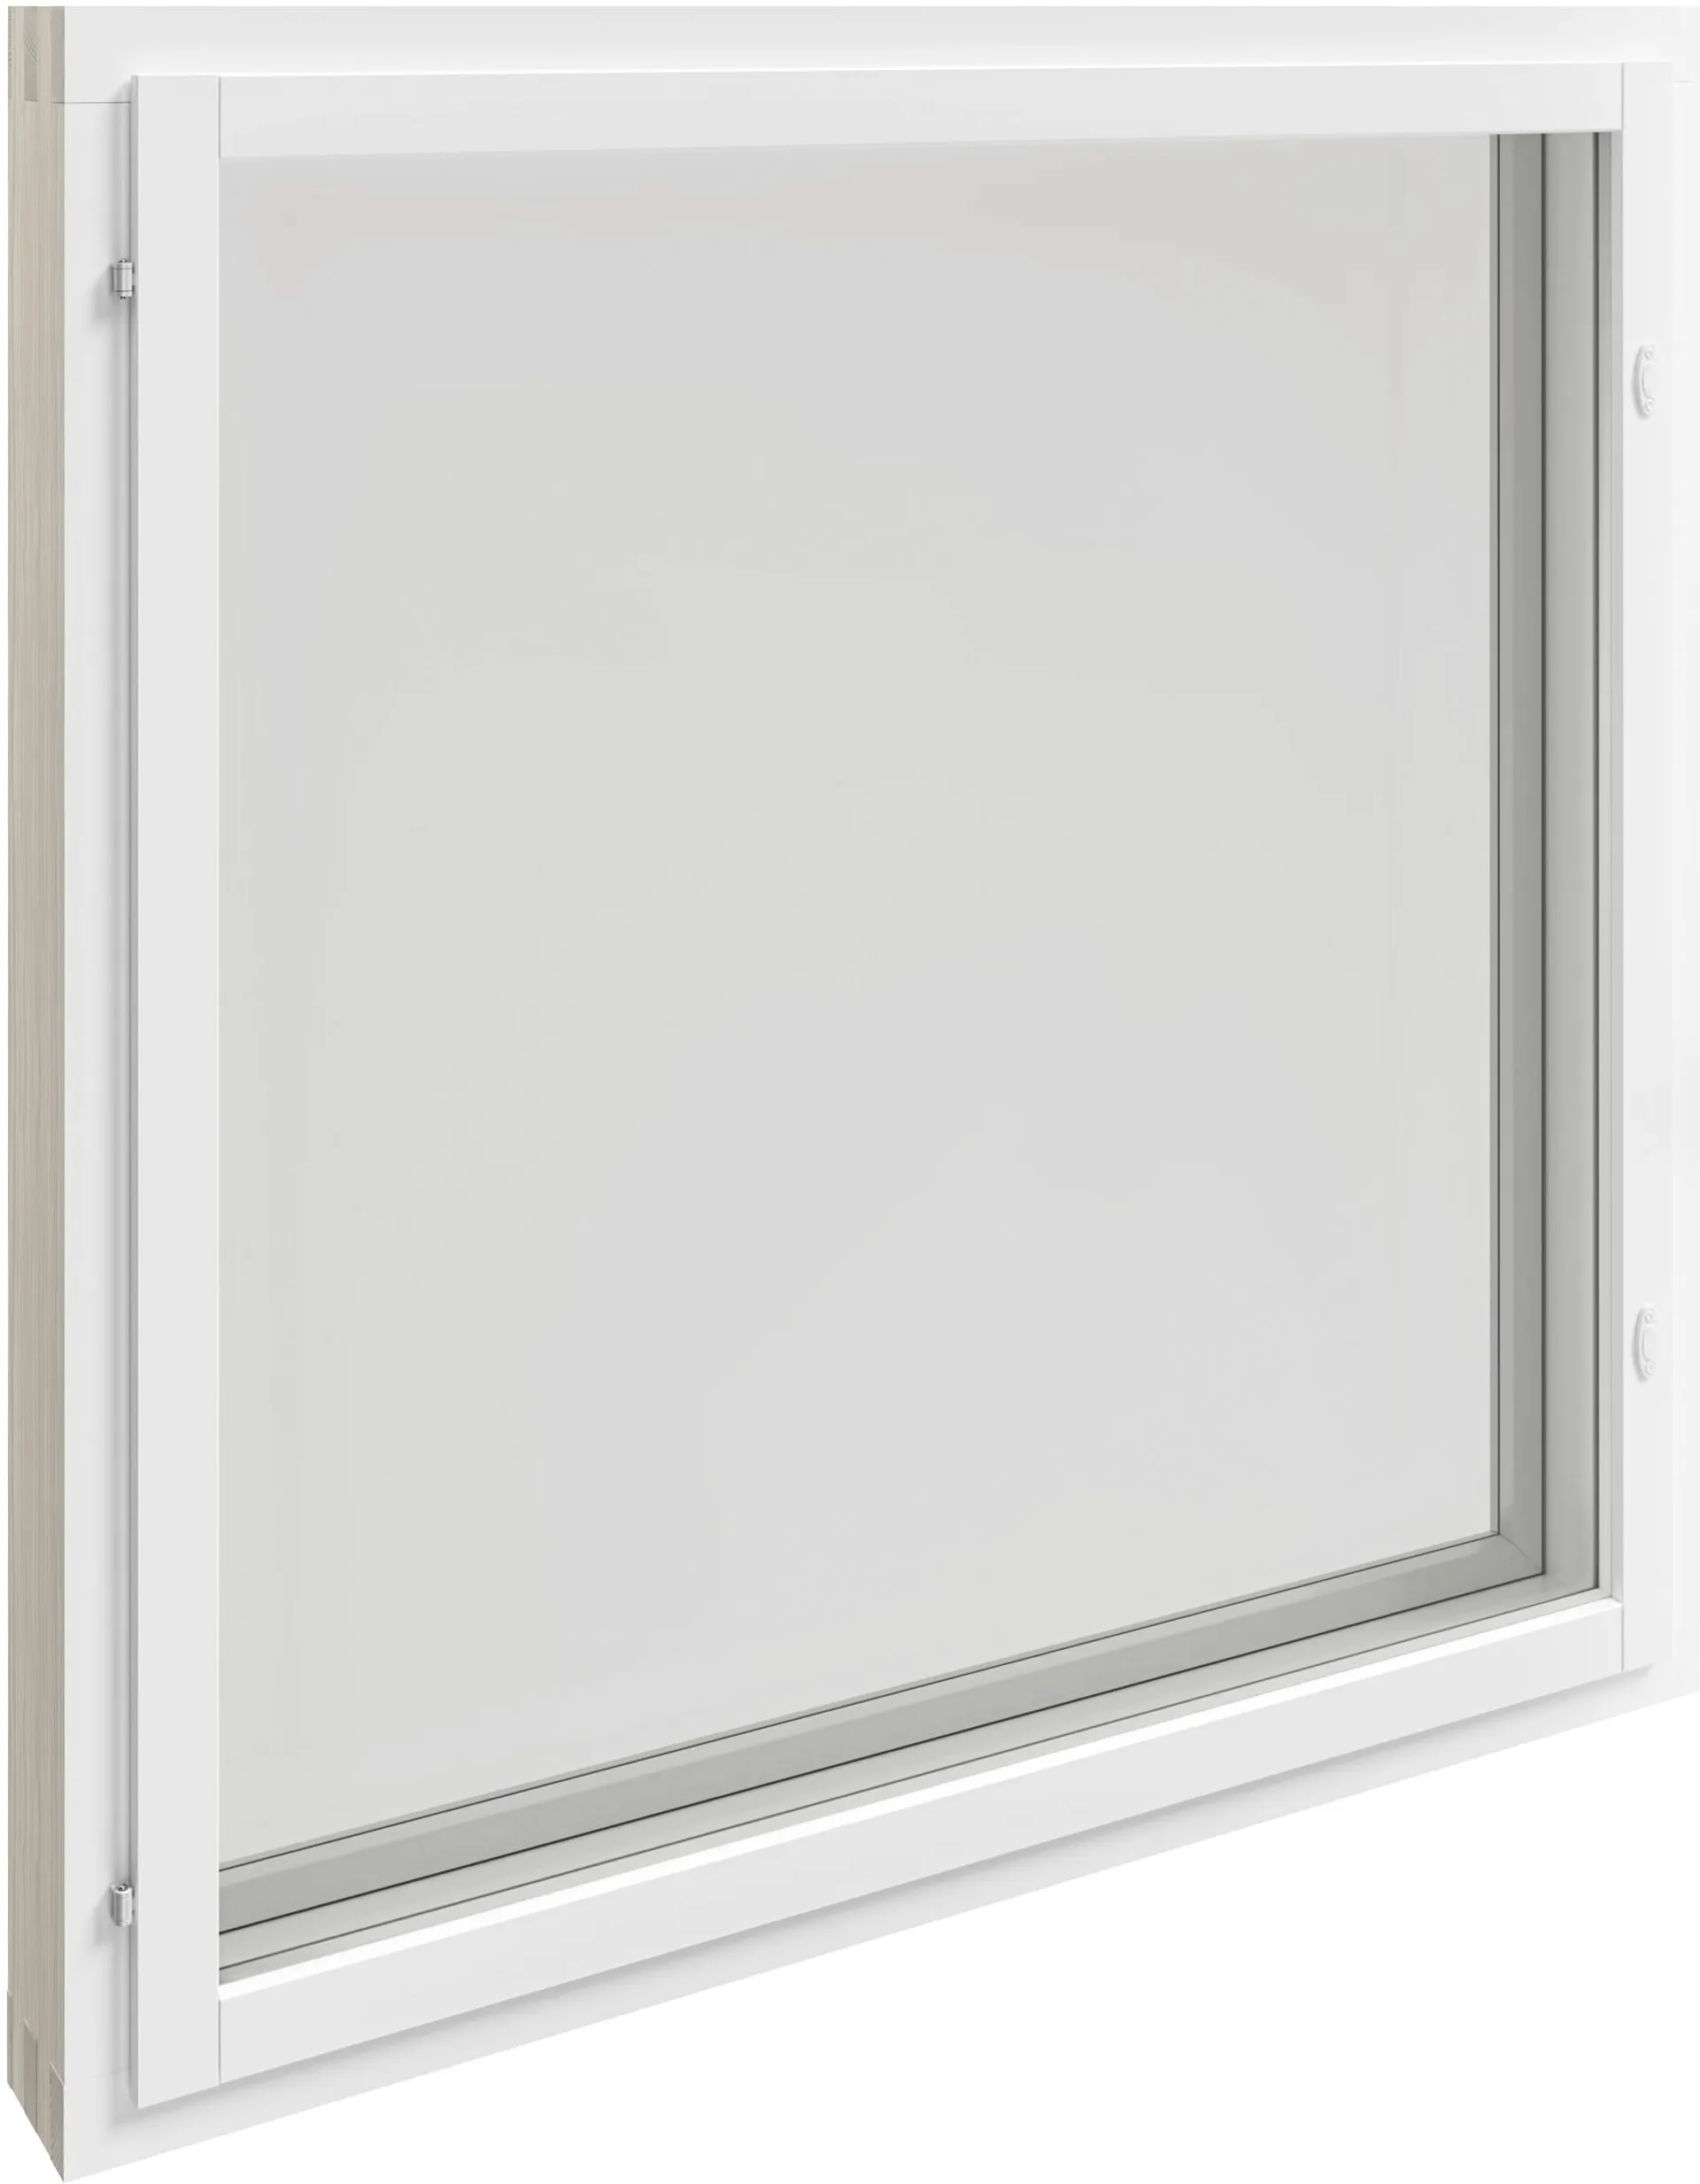 Kaski Ikkuna MSEA 12x12 valkoinen